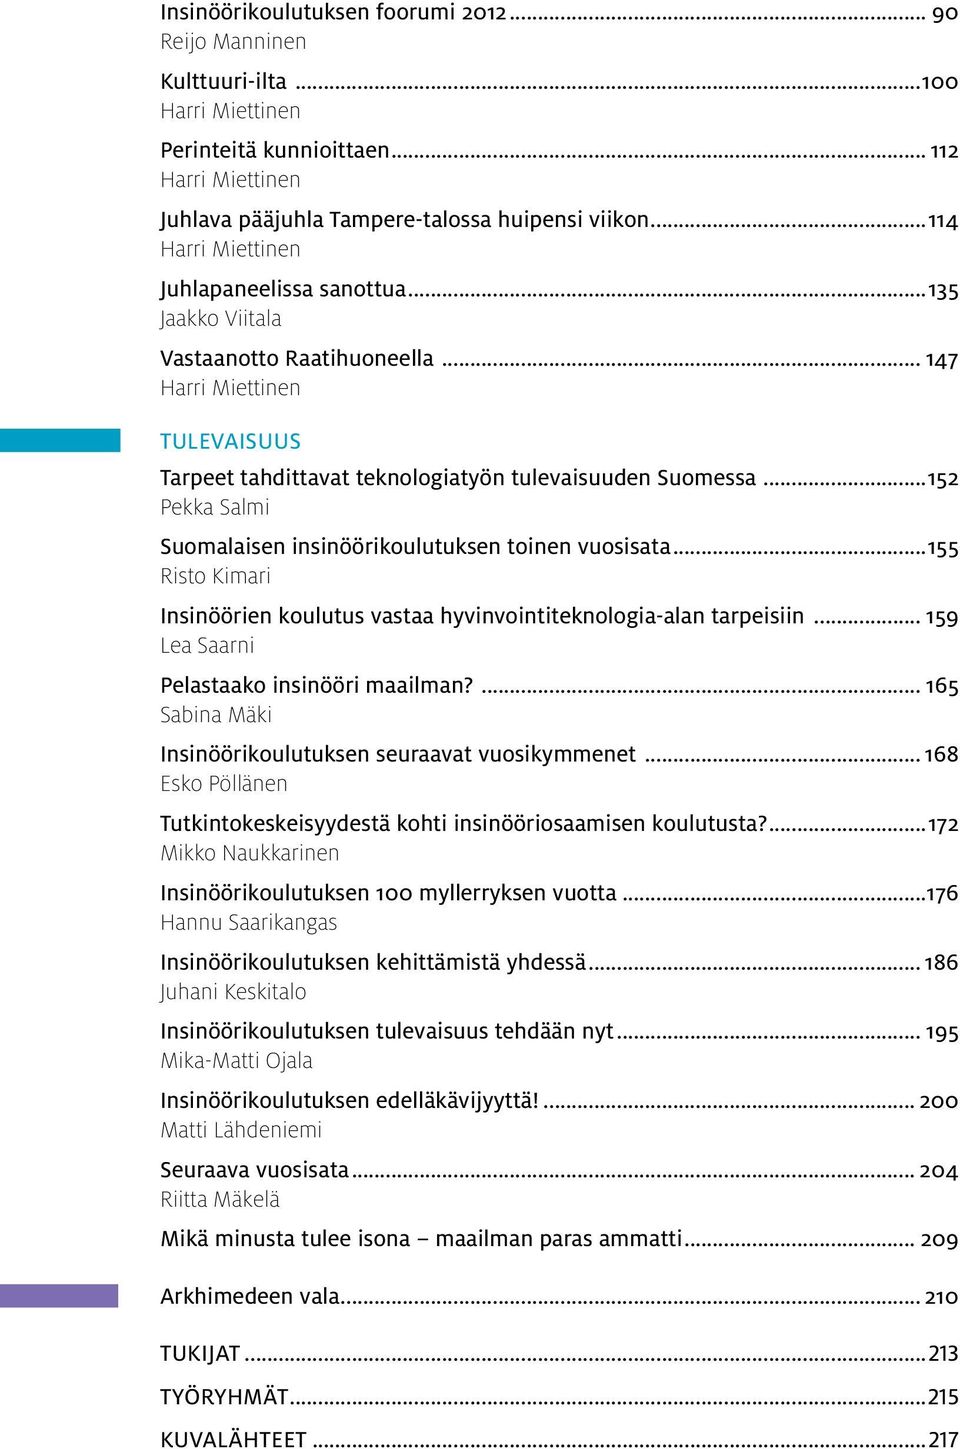 ..152 Pekka Salmi Suomalaisen insinöörikoulutuksen toinen vuosisata...155 Risto Kimari Insinöörien koulutus vastaa hyvinvointiteknologia-alan tarpeisiin... 159 Lea Saarni Pelastaako insinööri maailman?